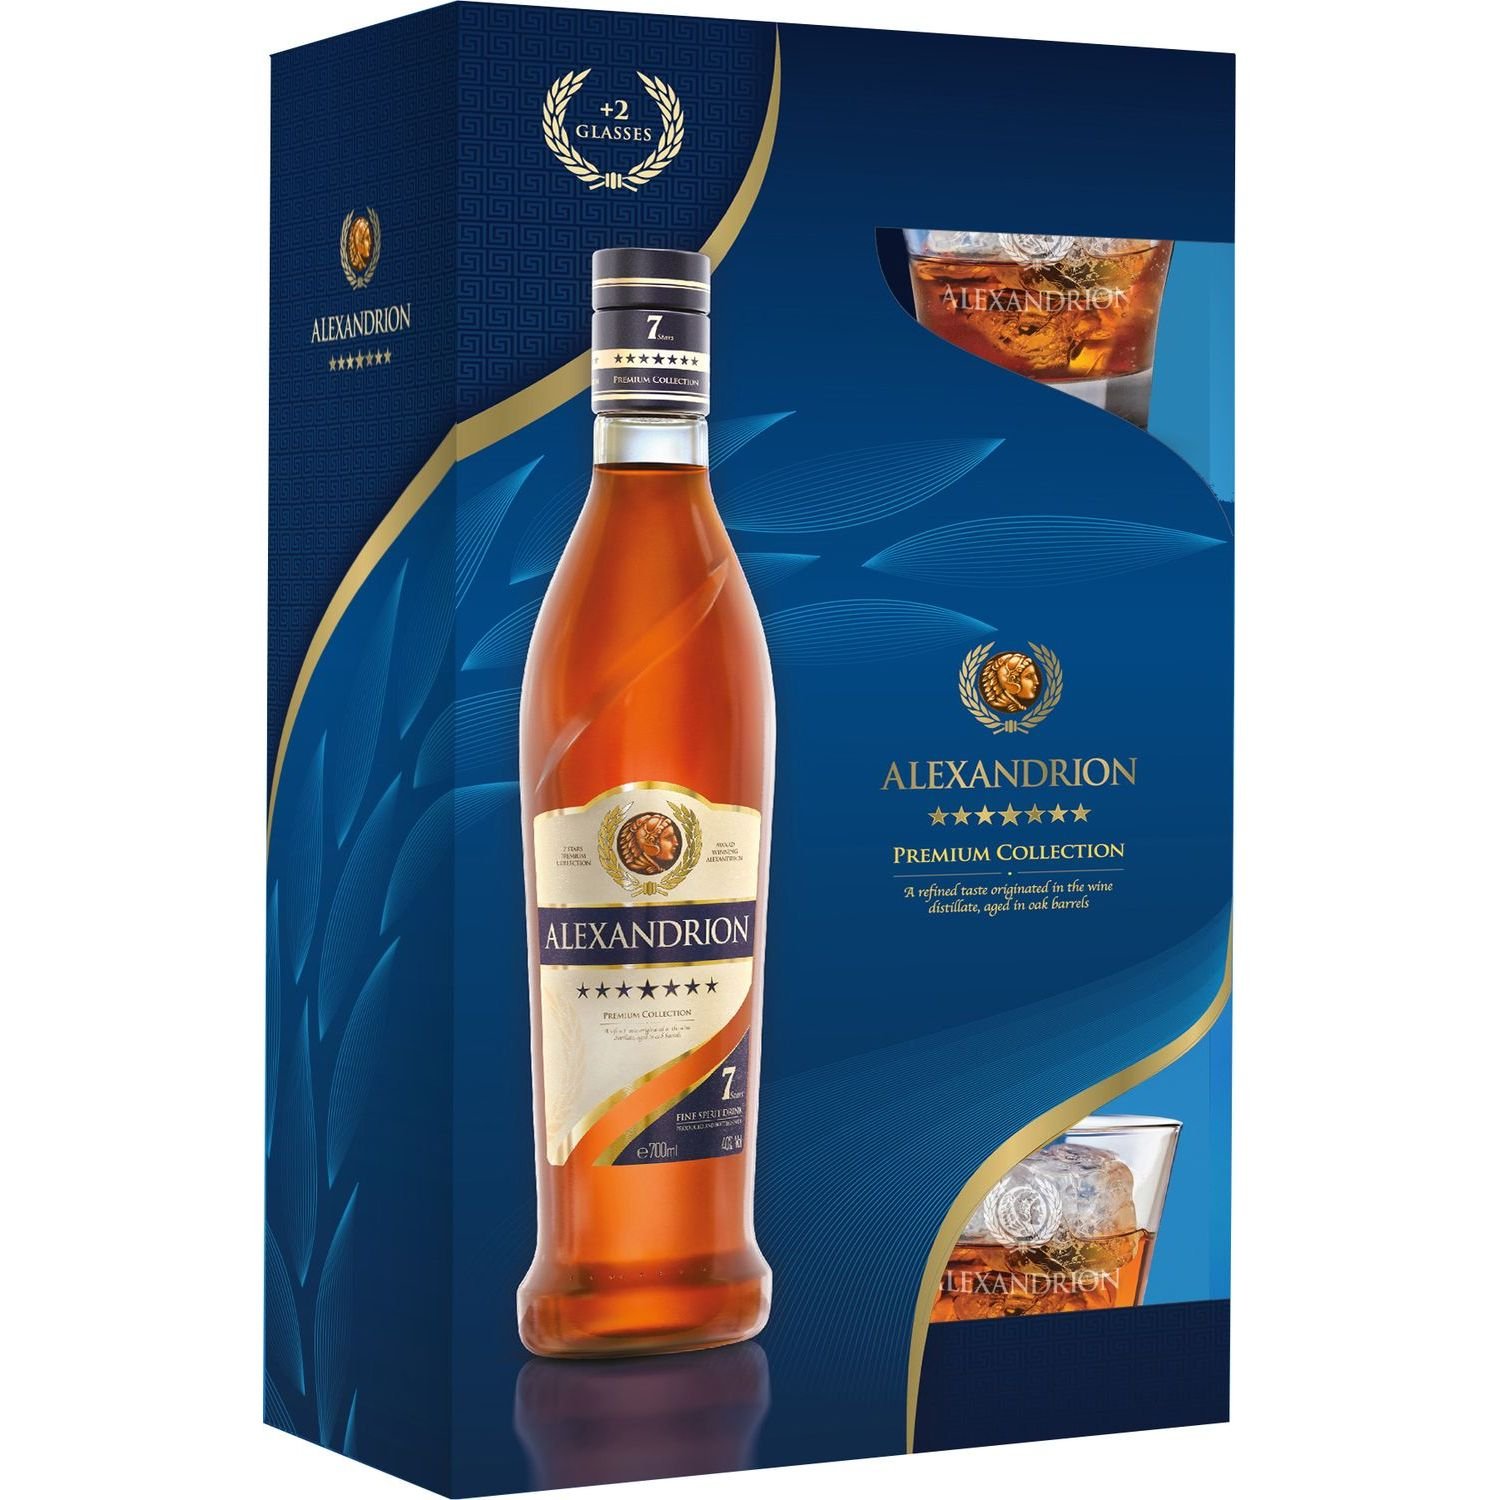 Крепкий алкогольный напиток Alexandrion 7 звезд, 40%, в подарочной упаковке, 0,7 л + 2 стакана - фото 1